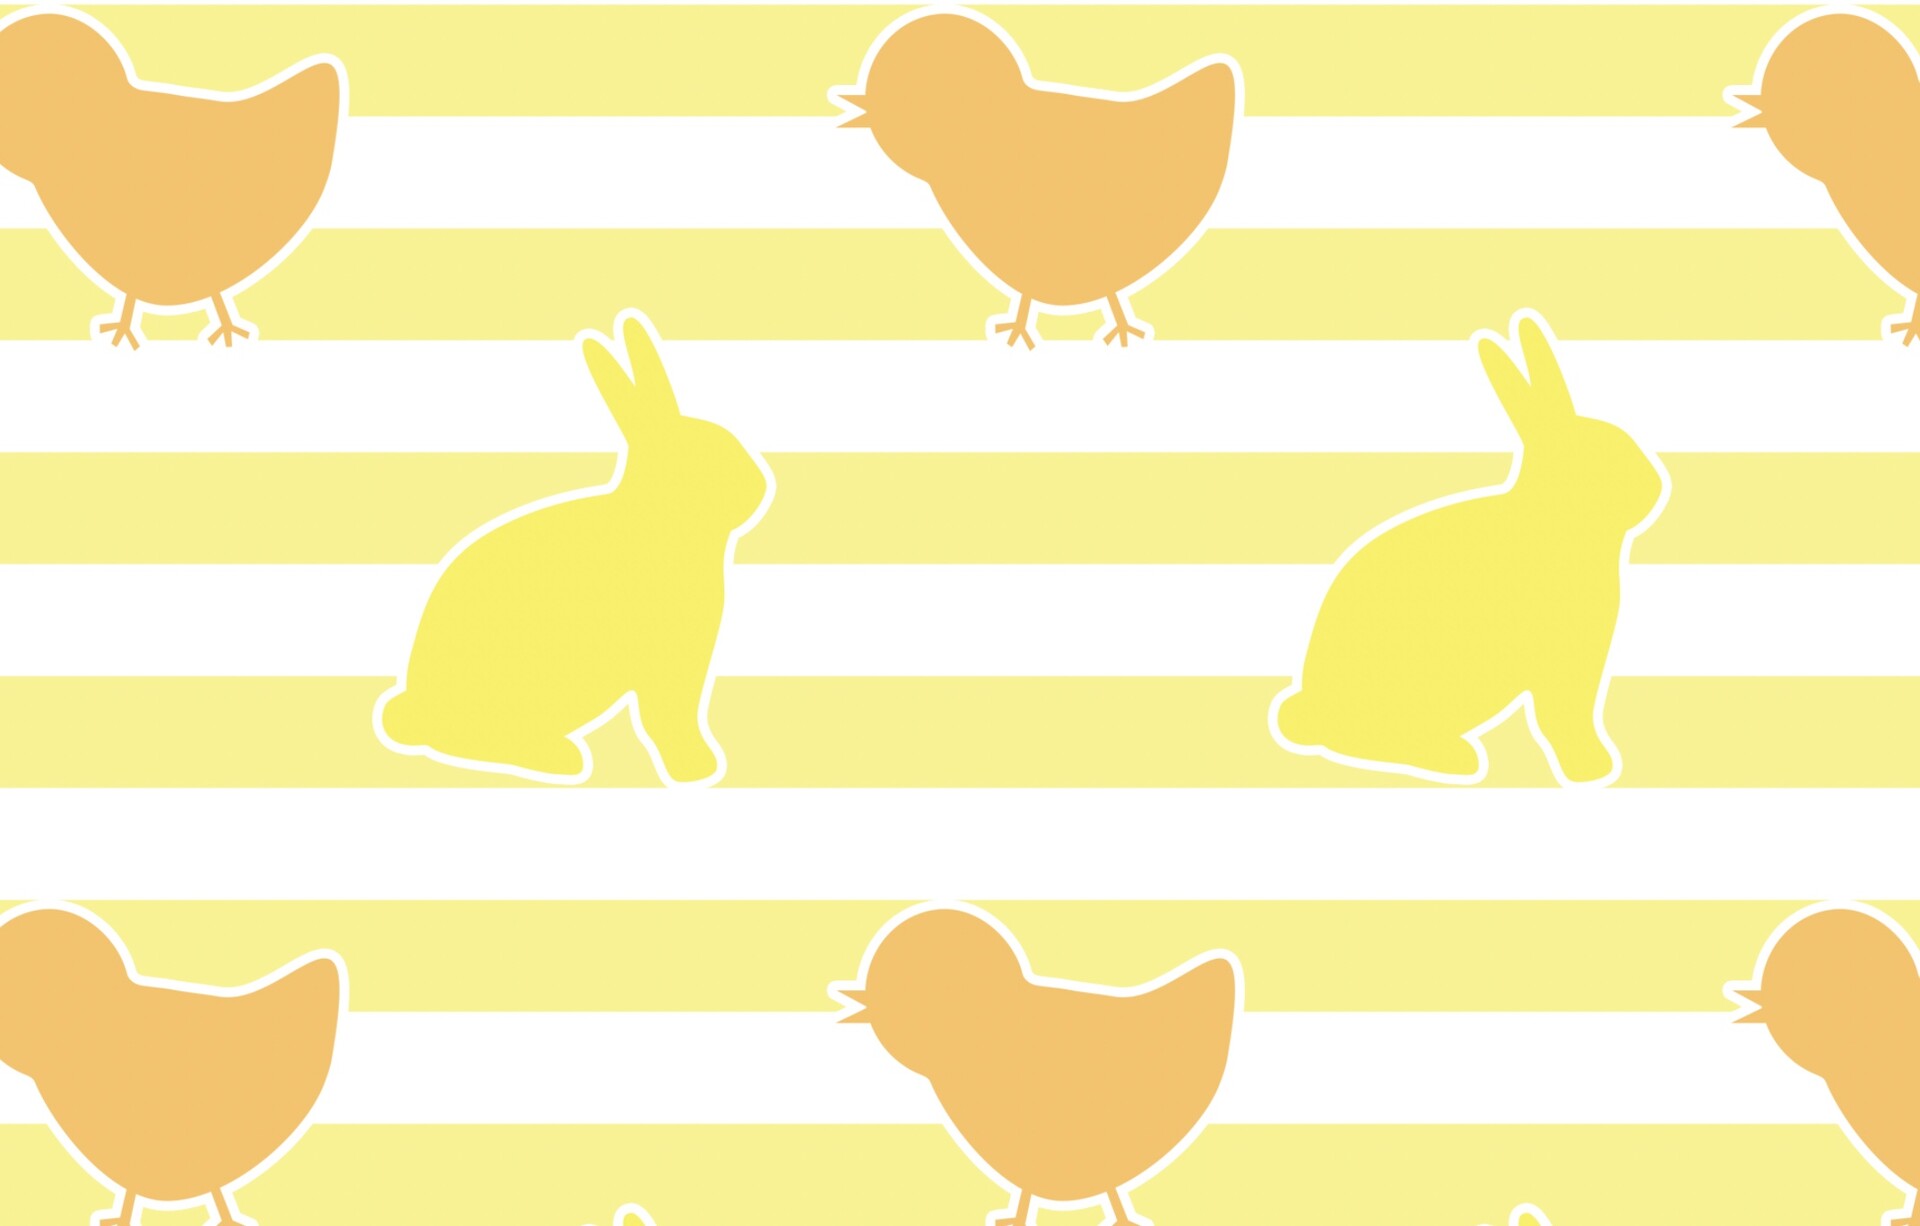 可爱小鸟、小鸡与兔子卡通图案Photoshop填充素材